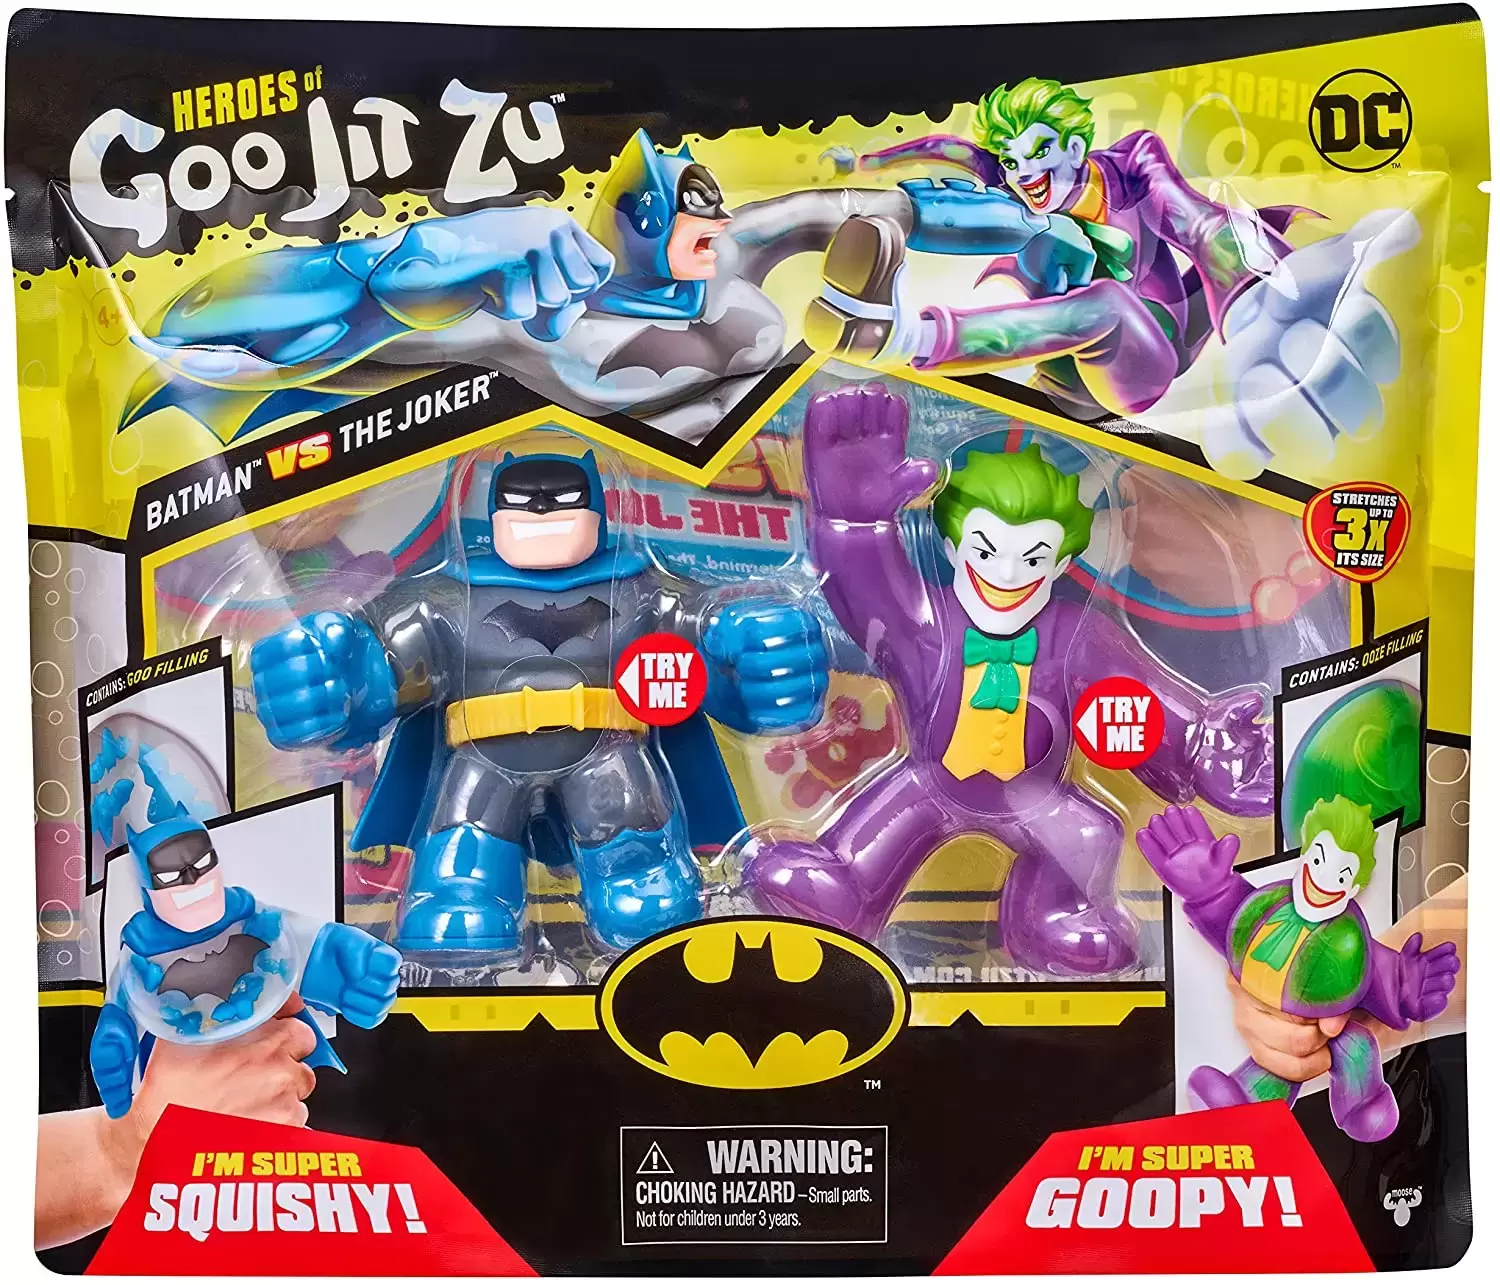 Heroes of Goo Jit Zu - DC - Batman vs The Joker